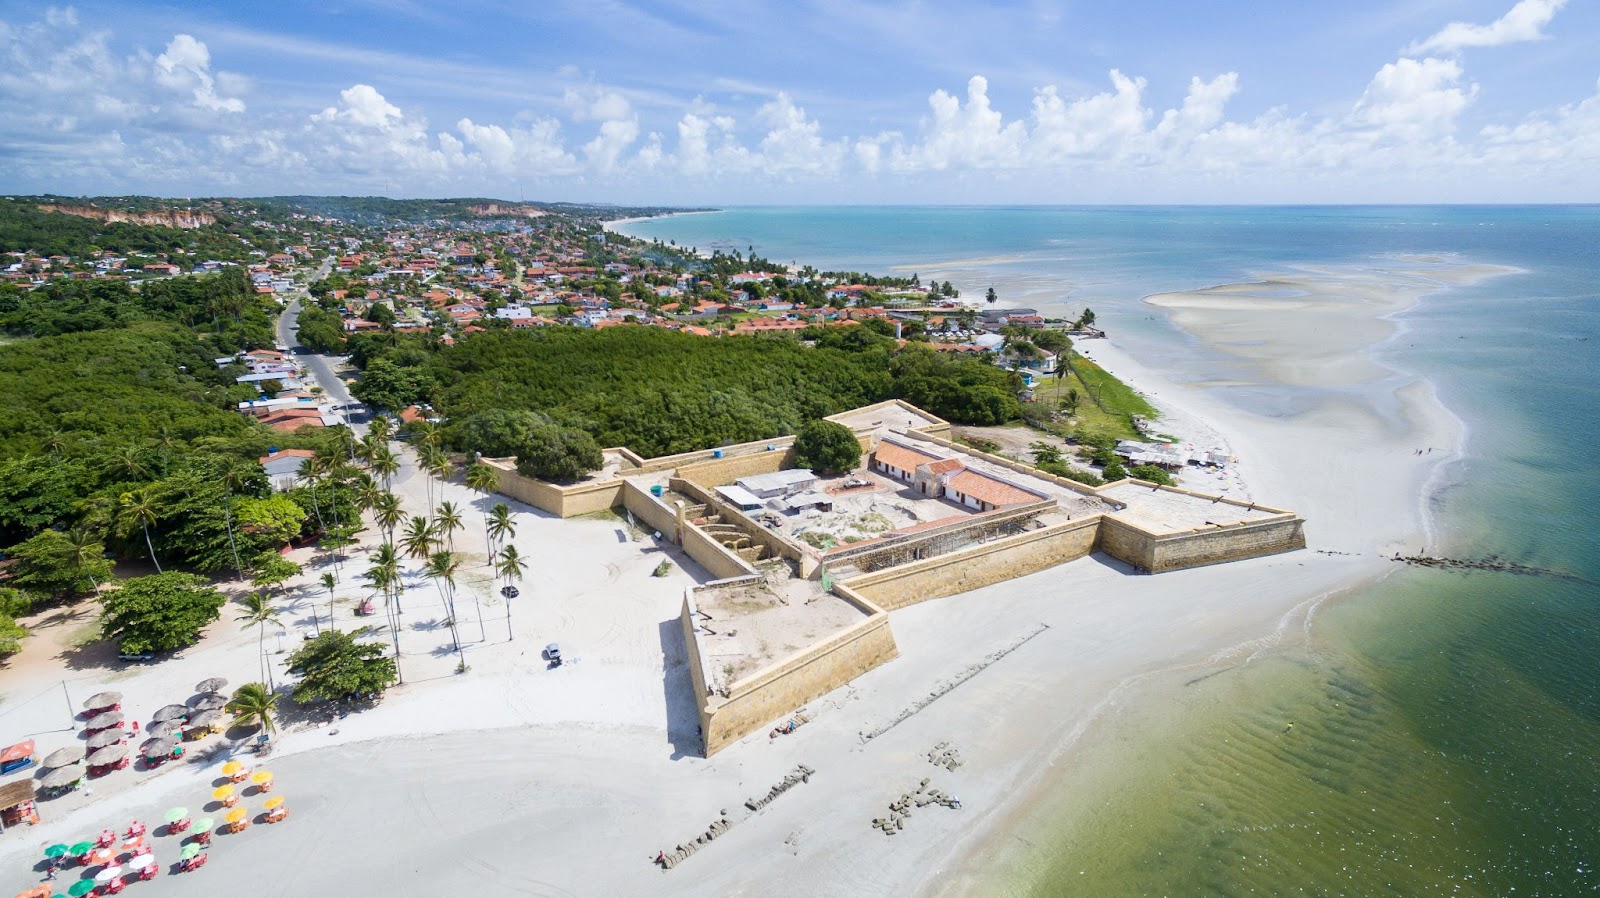 Imagem aérea do Forte Orange/Fortaleza de Santa Cruz. Parte da Praia do Forte ao lado esquerdo da foto, com larga faixa de areia em frente ao mar cristalino e esverdeado.
